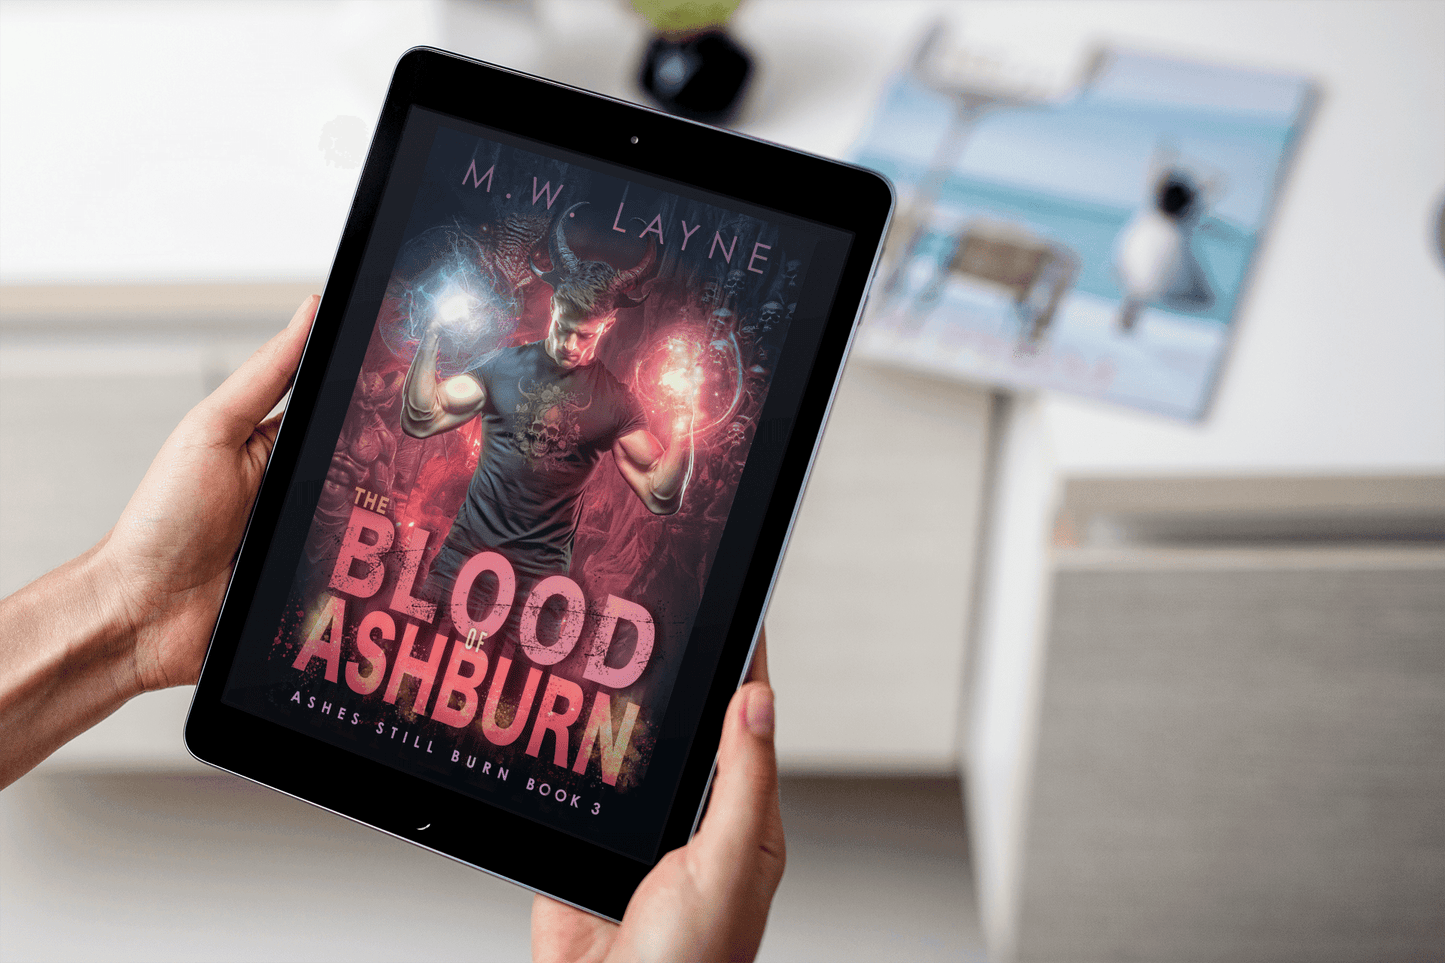 The Blood of Ashburn (eBook) - Writer Layne Publishing